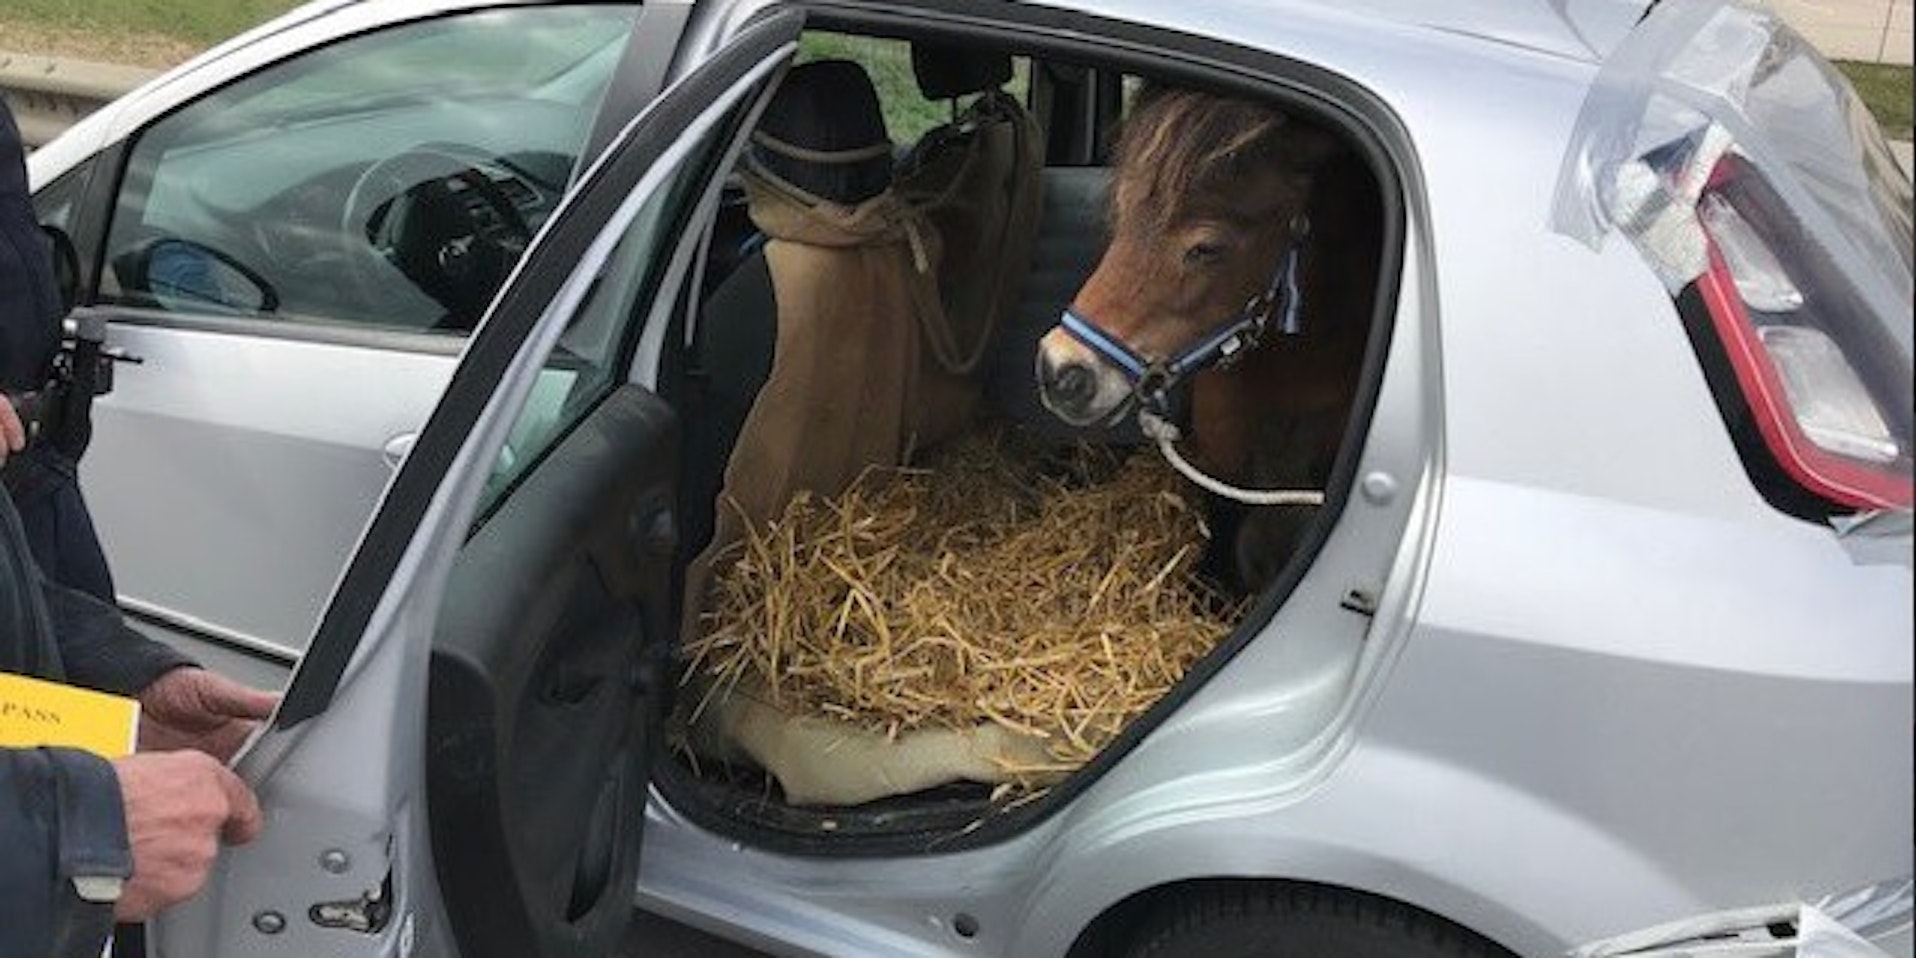 Shetland-Pony im Kleinwagen